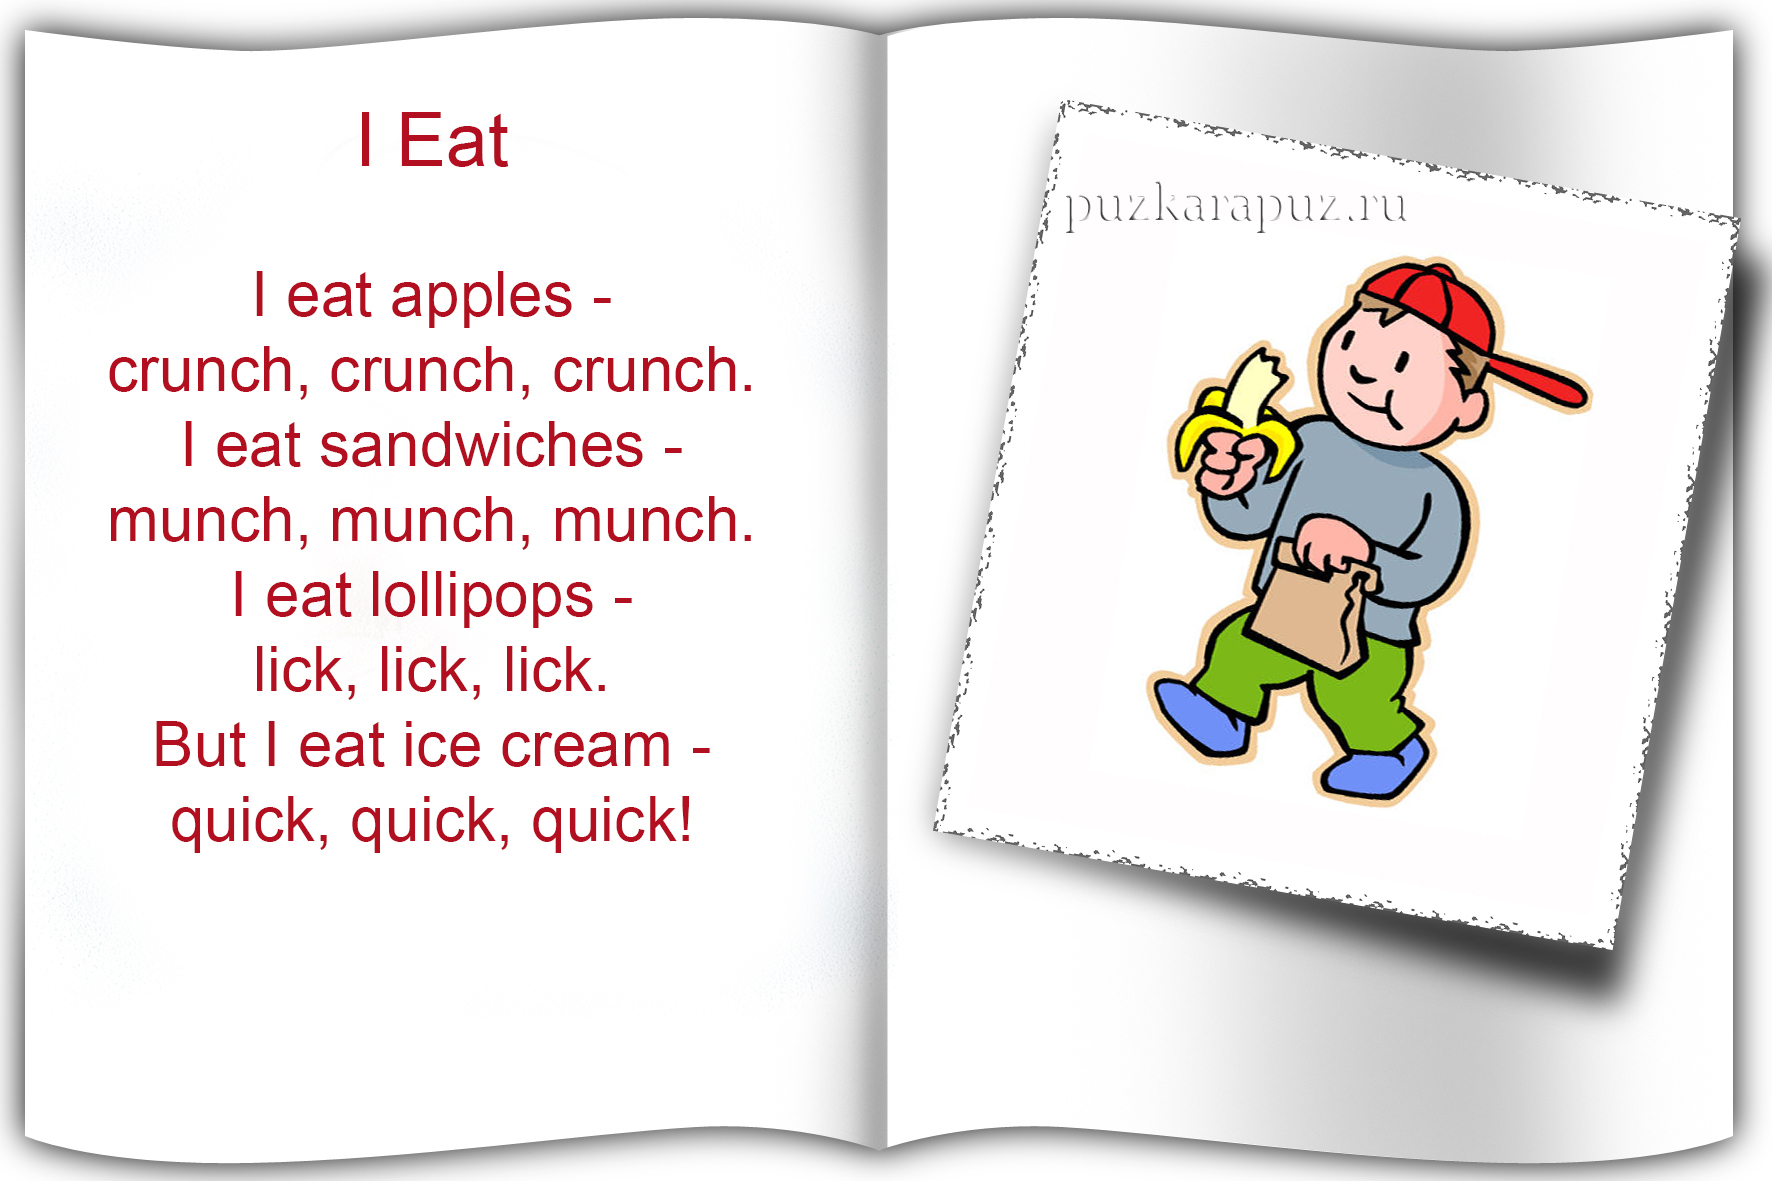 Еда на английском для детей